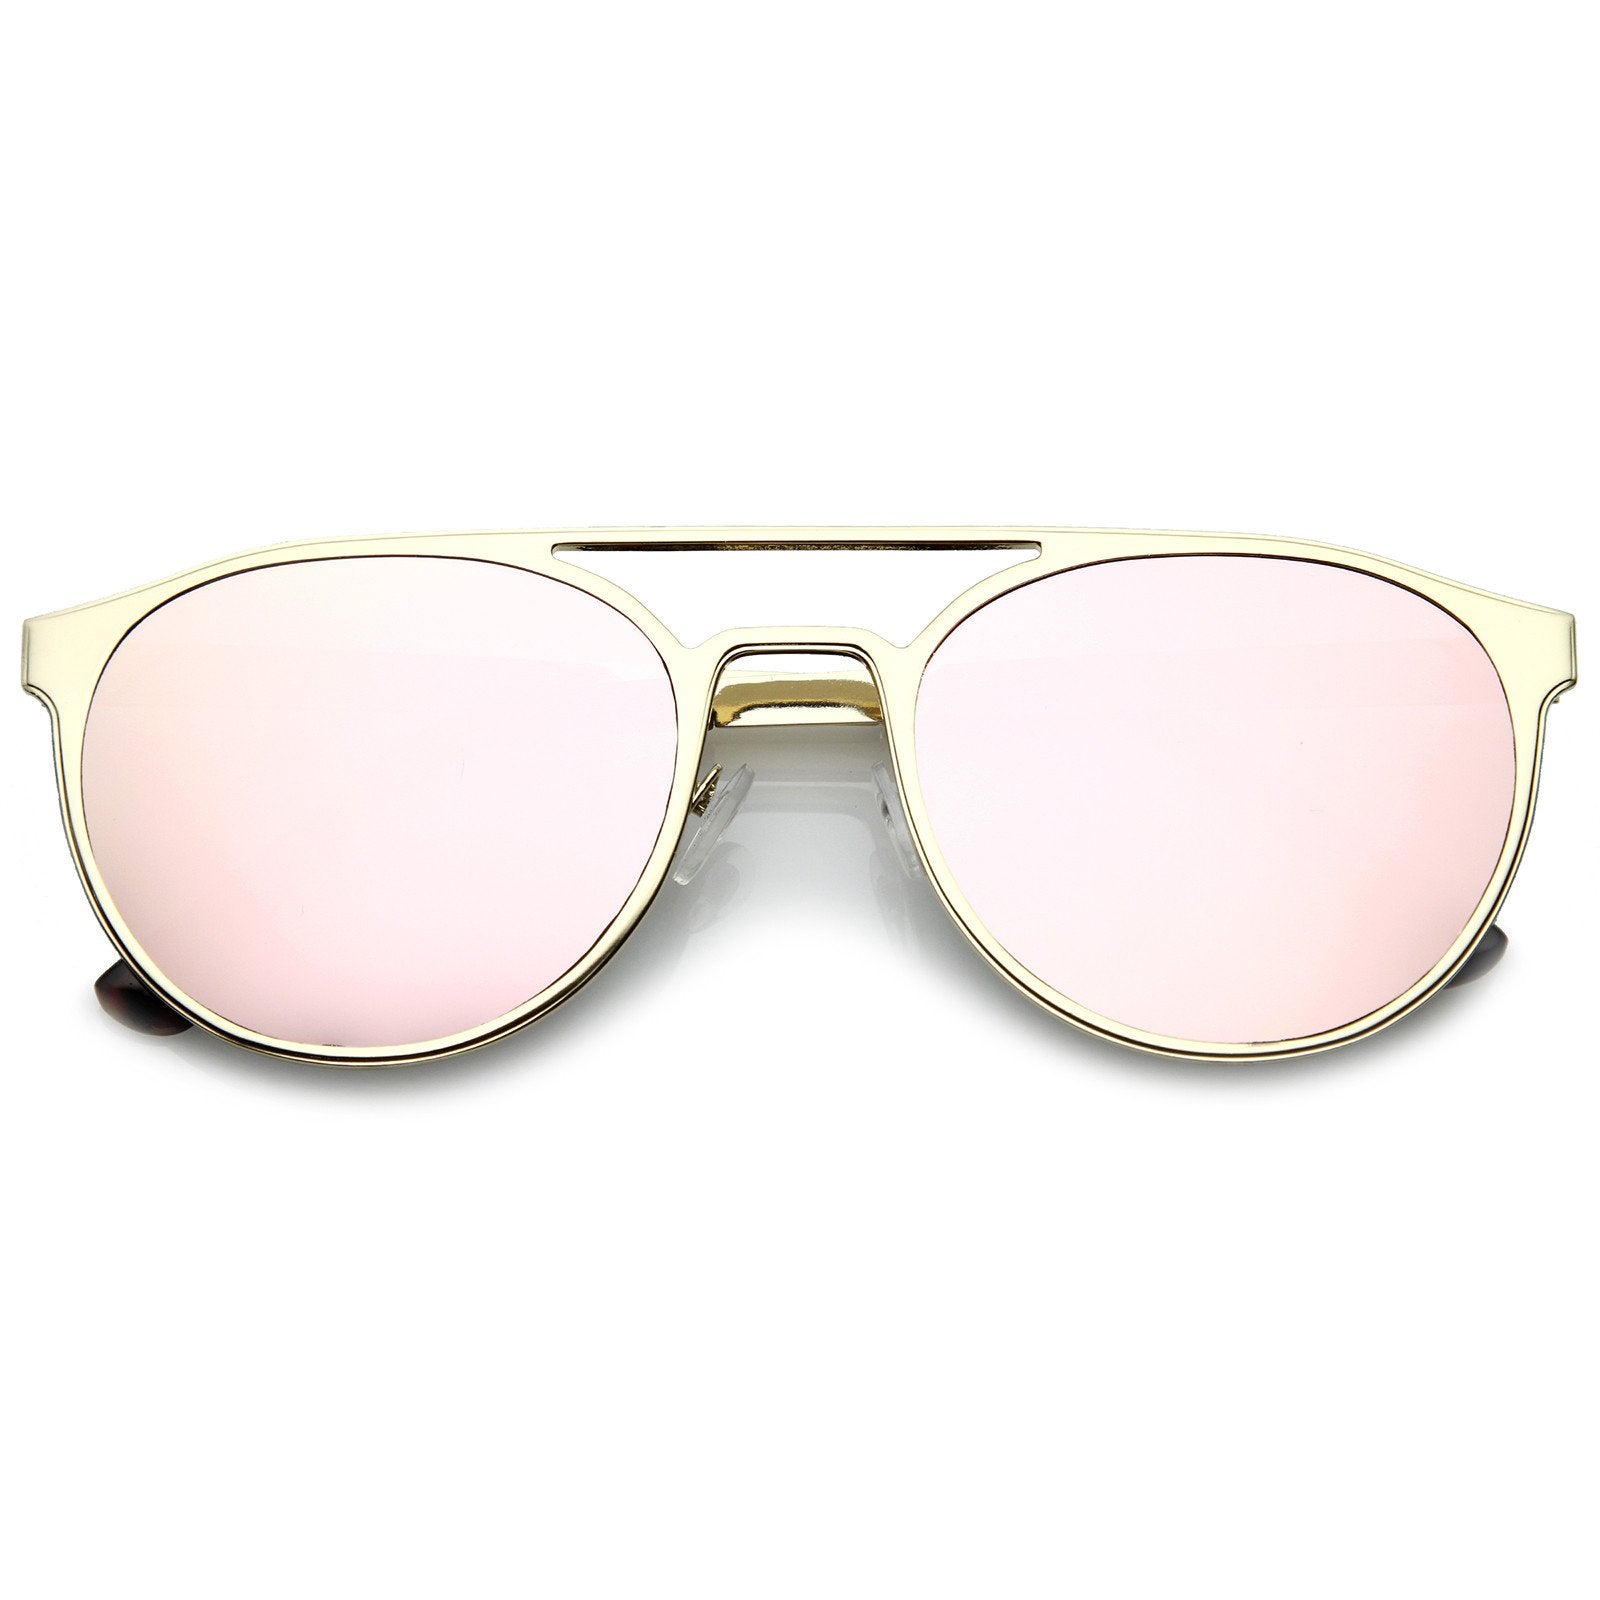 Modern Horned Rim Sleek Round Flat Lens Sunglasses - zeroUV